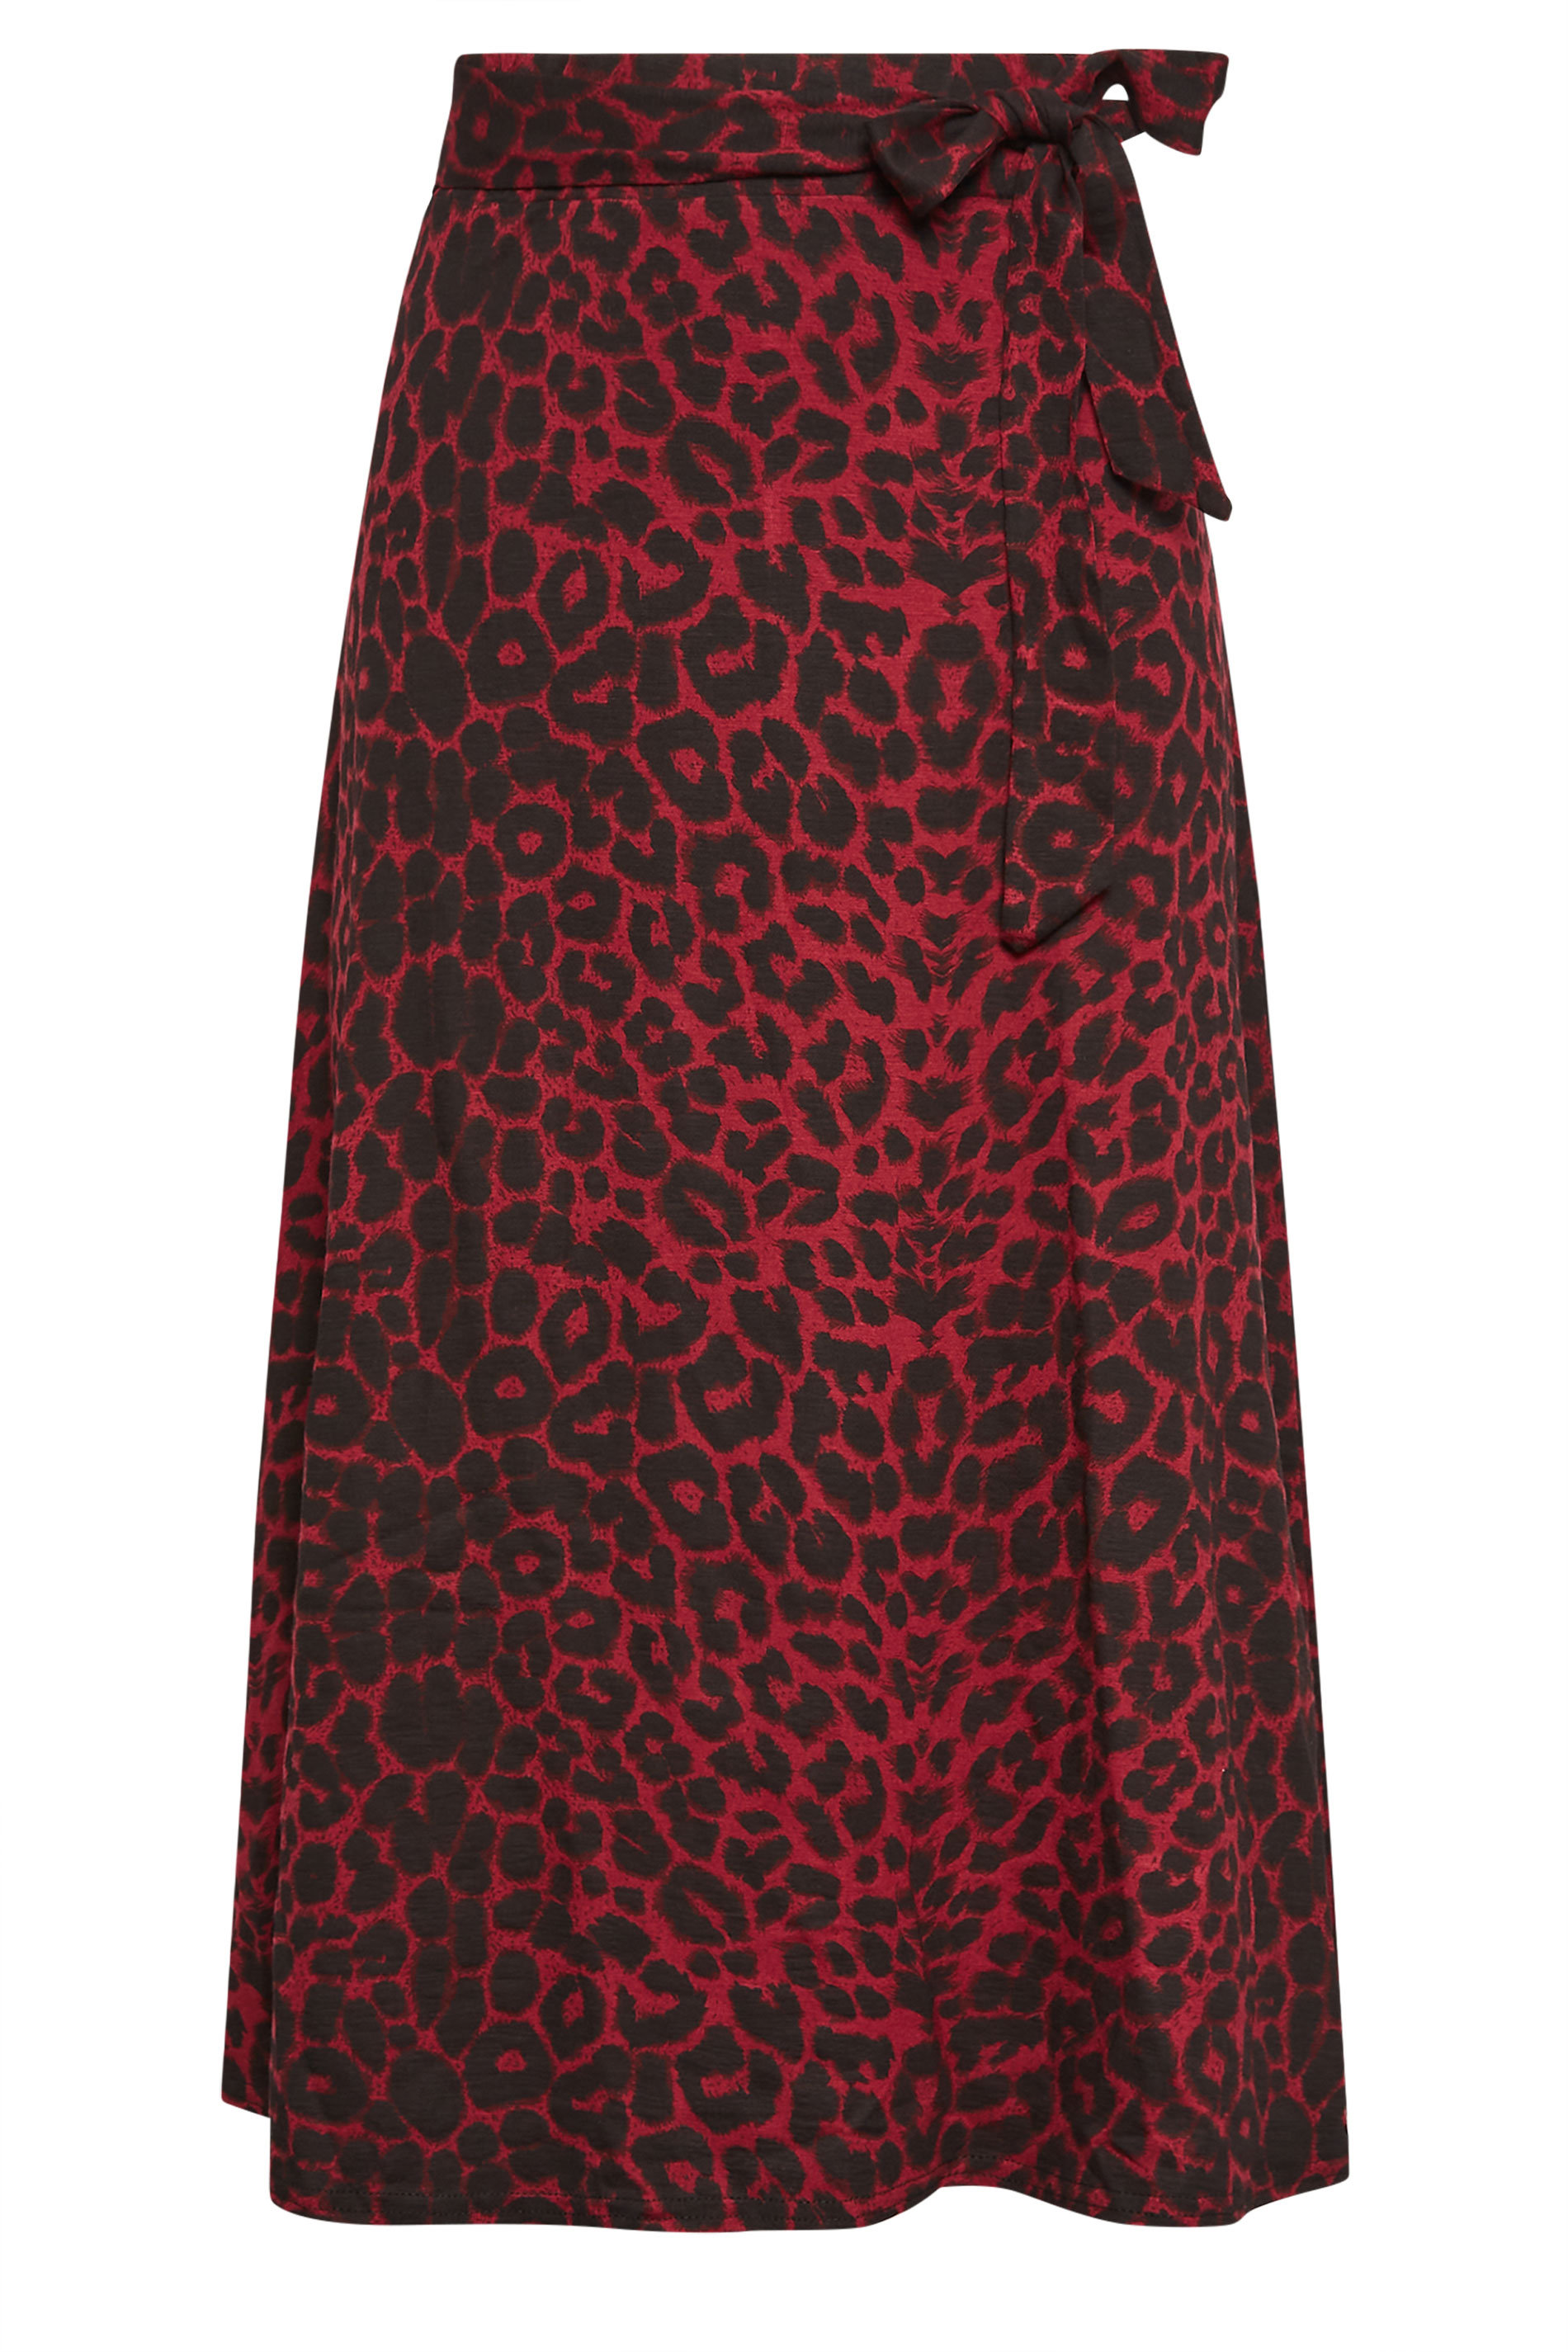 PixieGirl Red Leopard Print Midi Skirt | PixieGirl 3